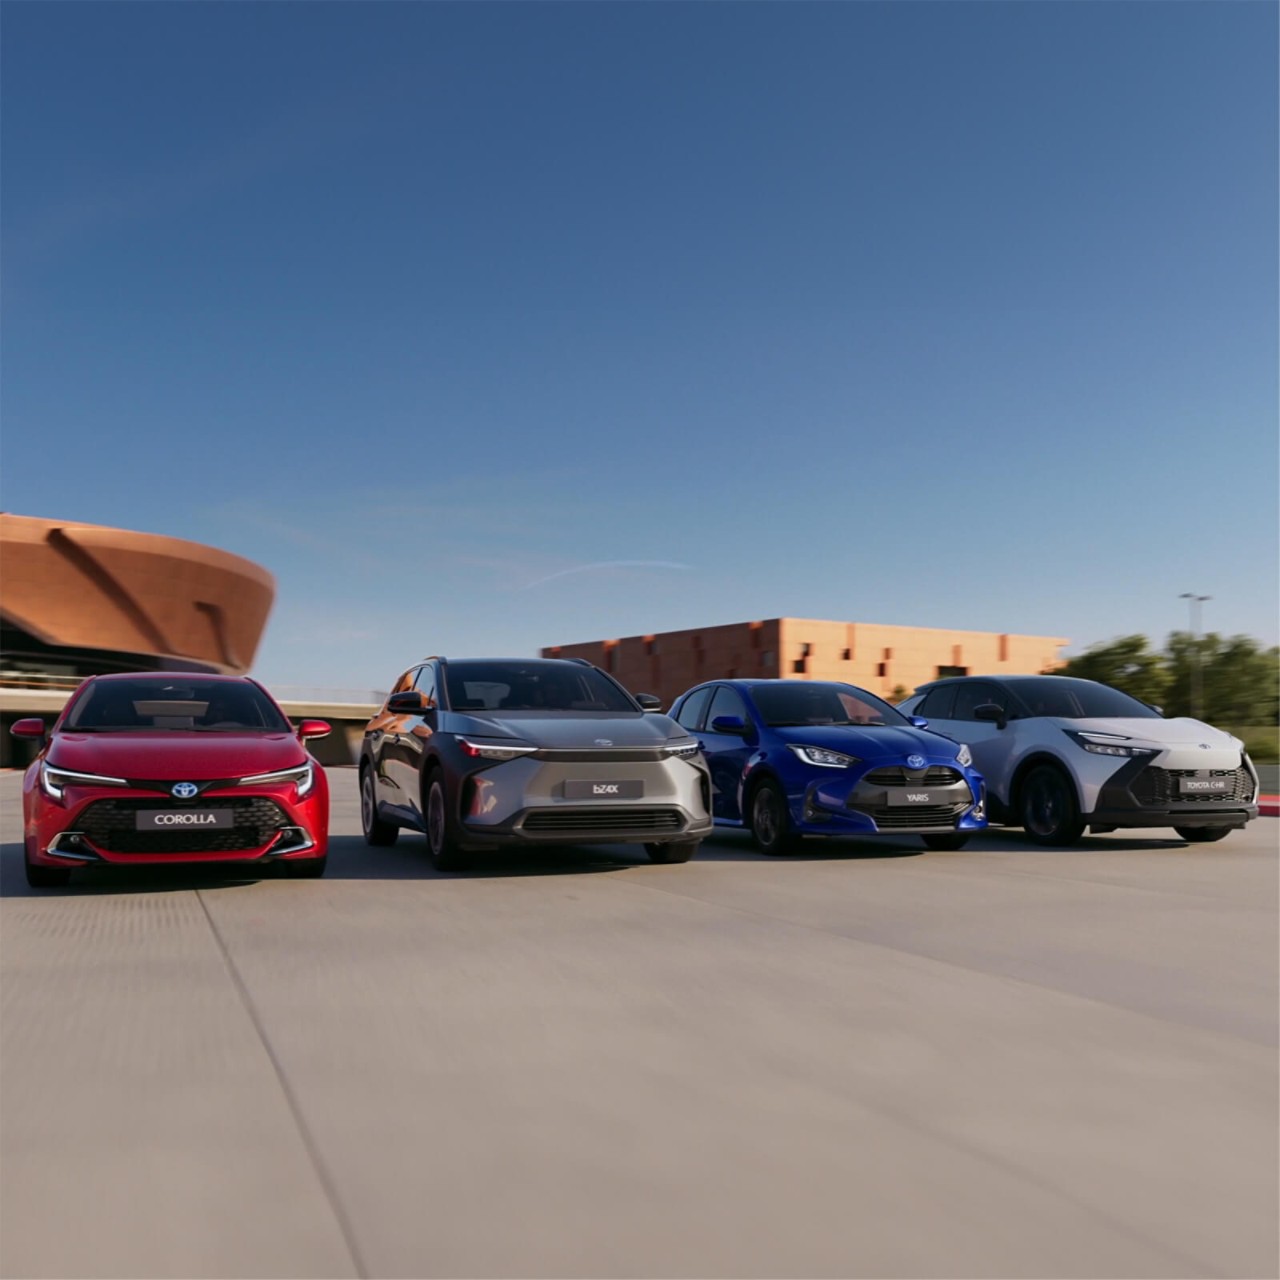 Corolla, bz4x, Aygo X, Toyota C-HR Nebeneinander